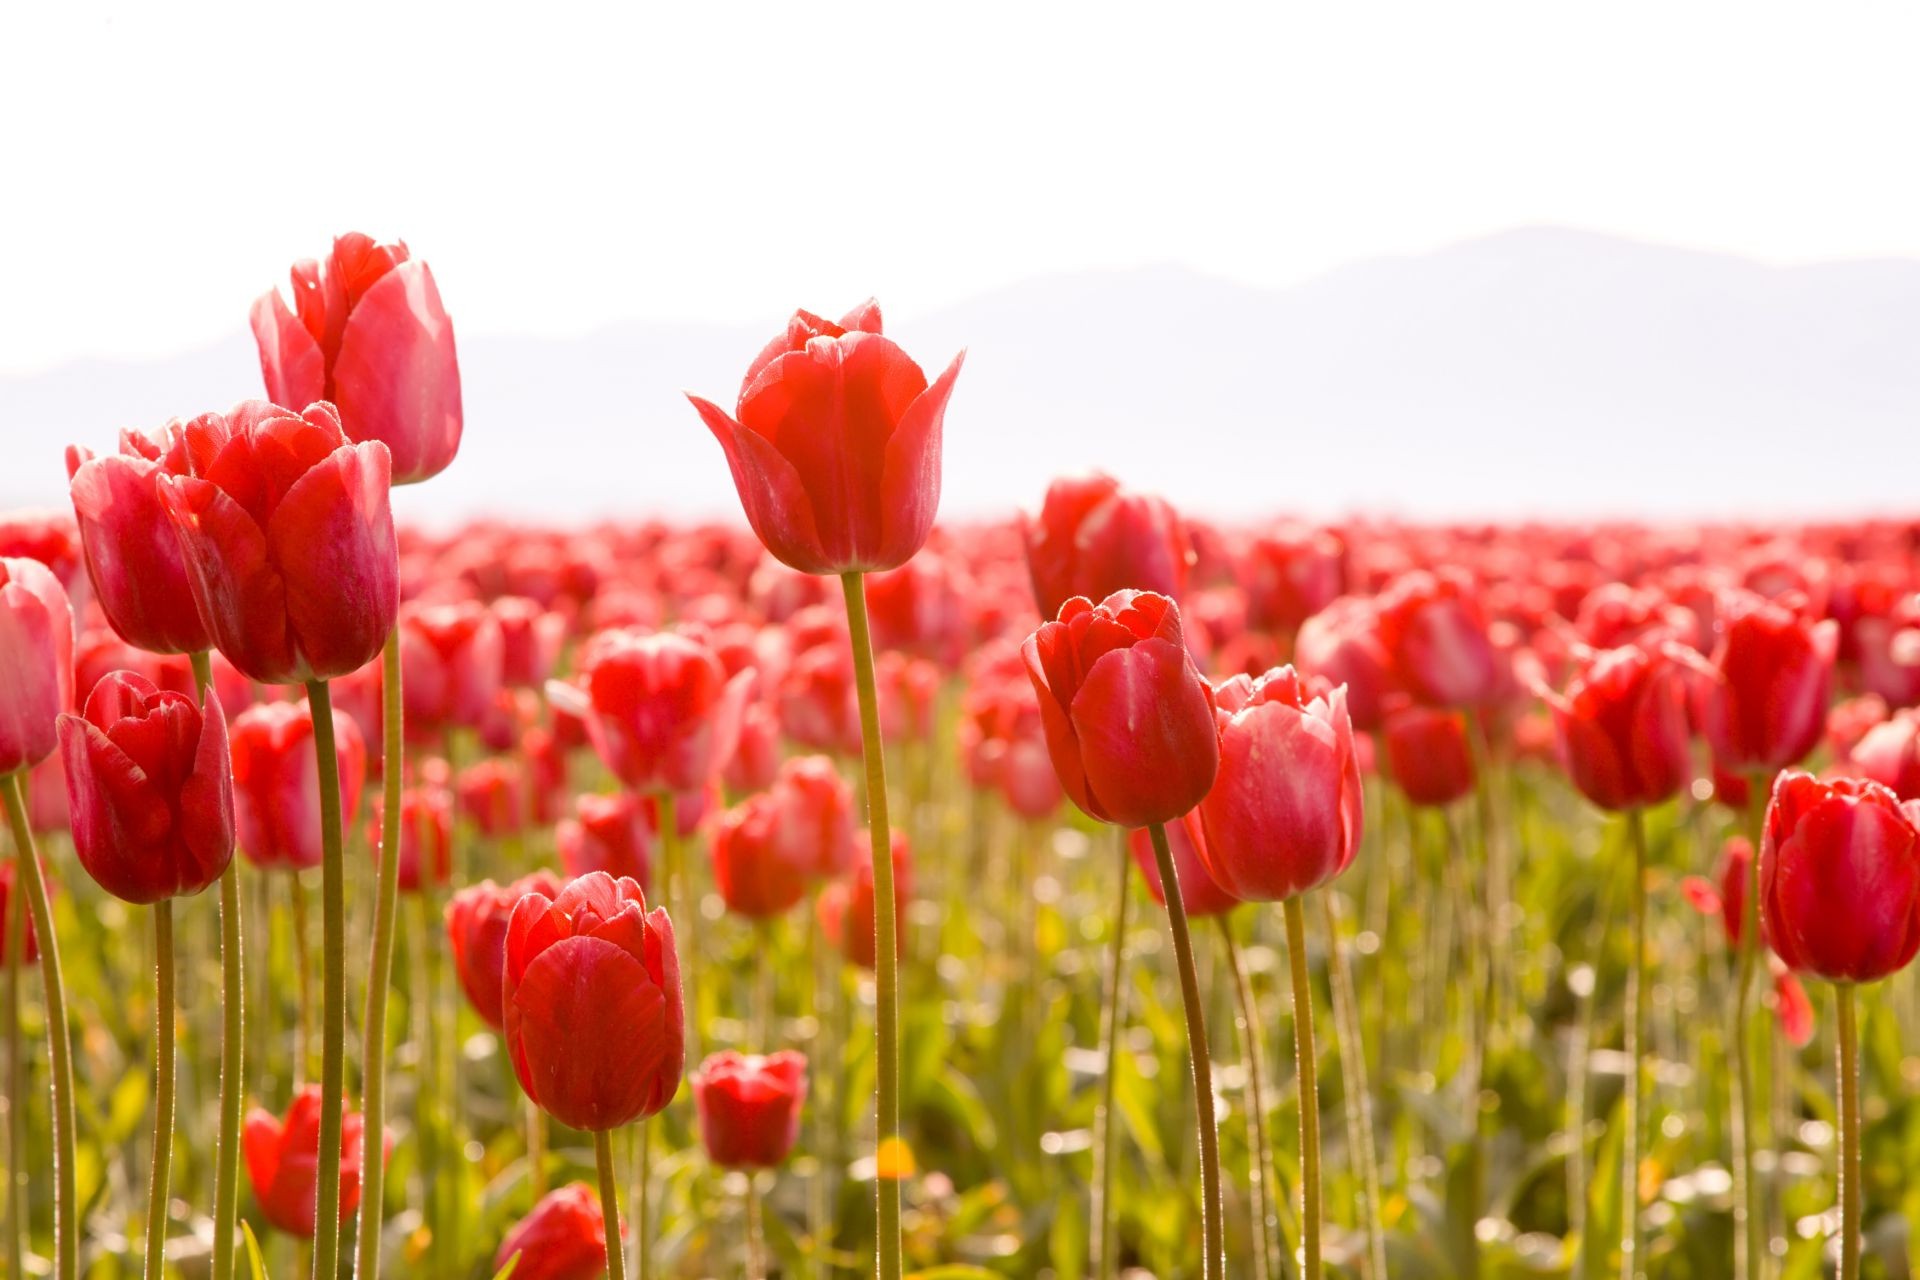 тюльпаны природа цветок тюльпан сад поле цвет яркий лето лист флора цветочные лузга блюминг лепесток сезон